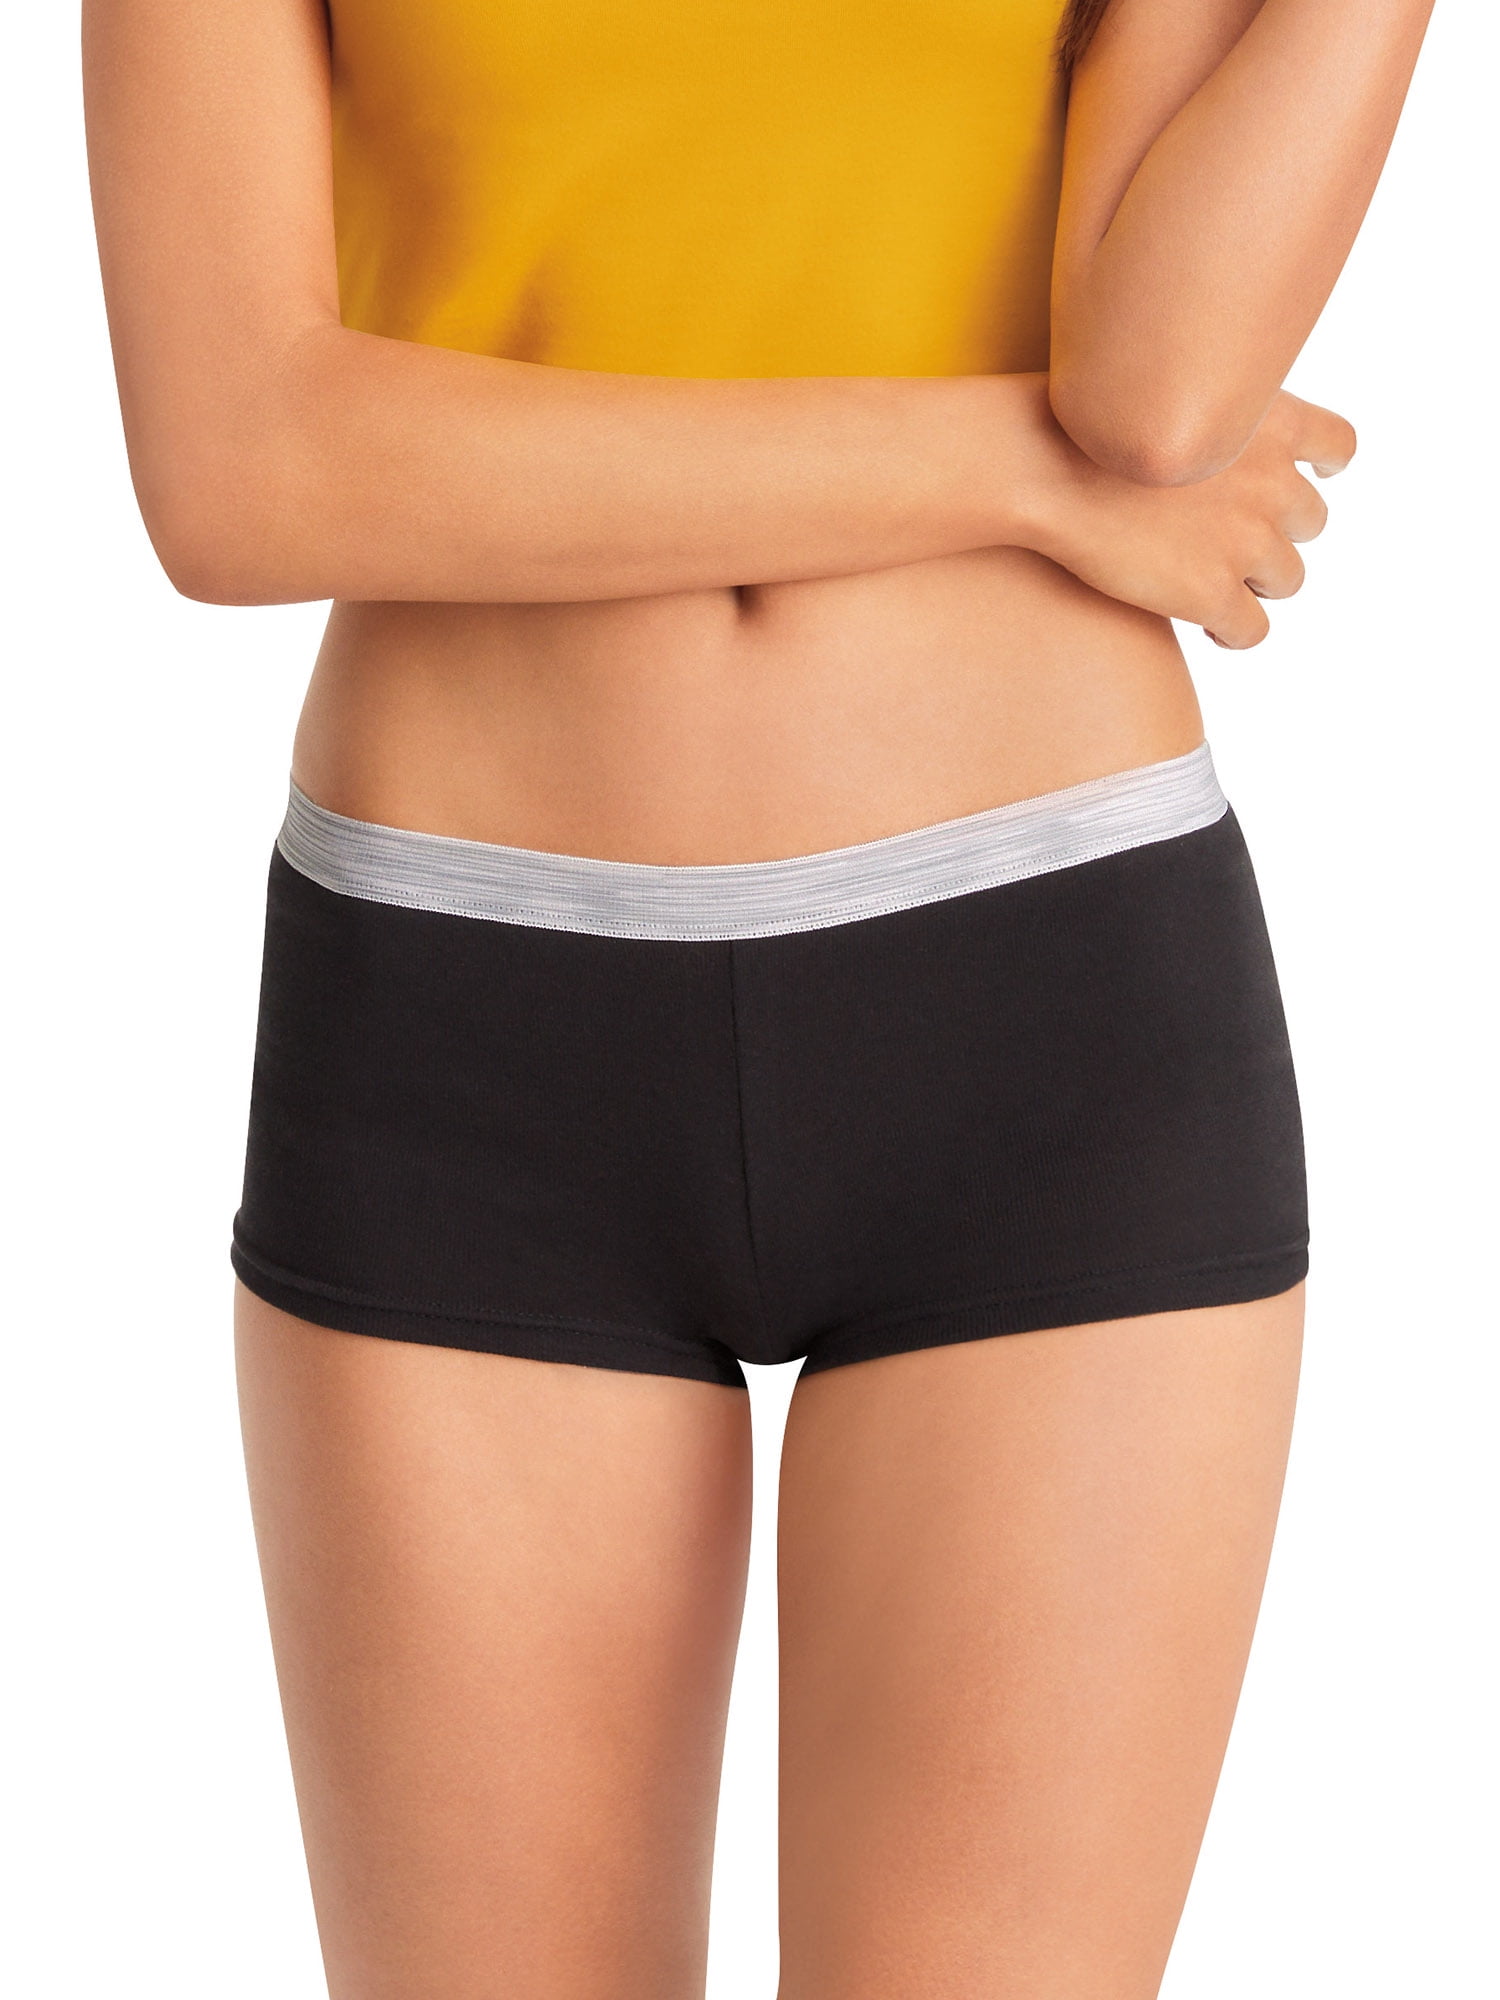 Hanes Women's Super Value Sporty Cotton Boyshort Underwear, 12